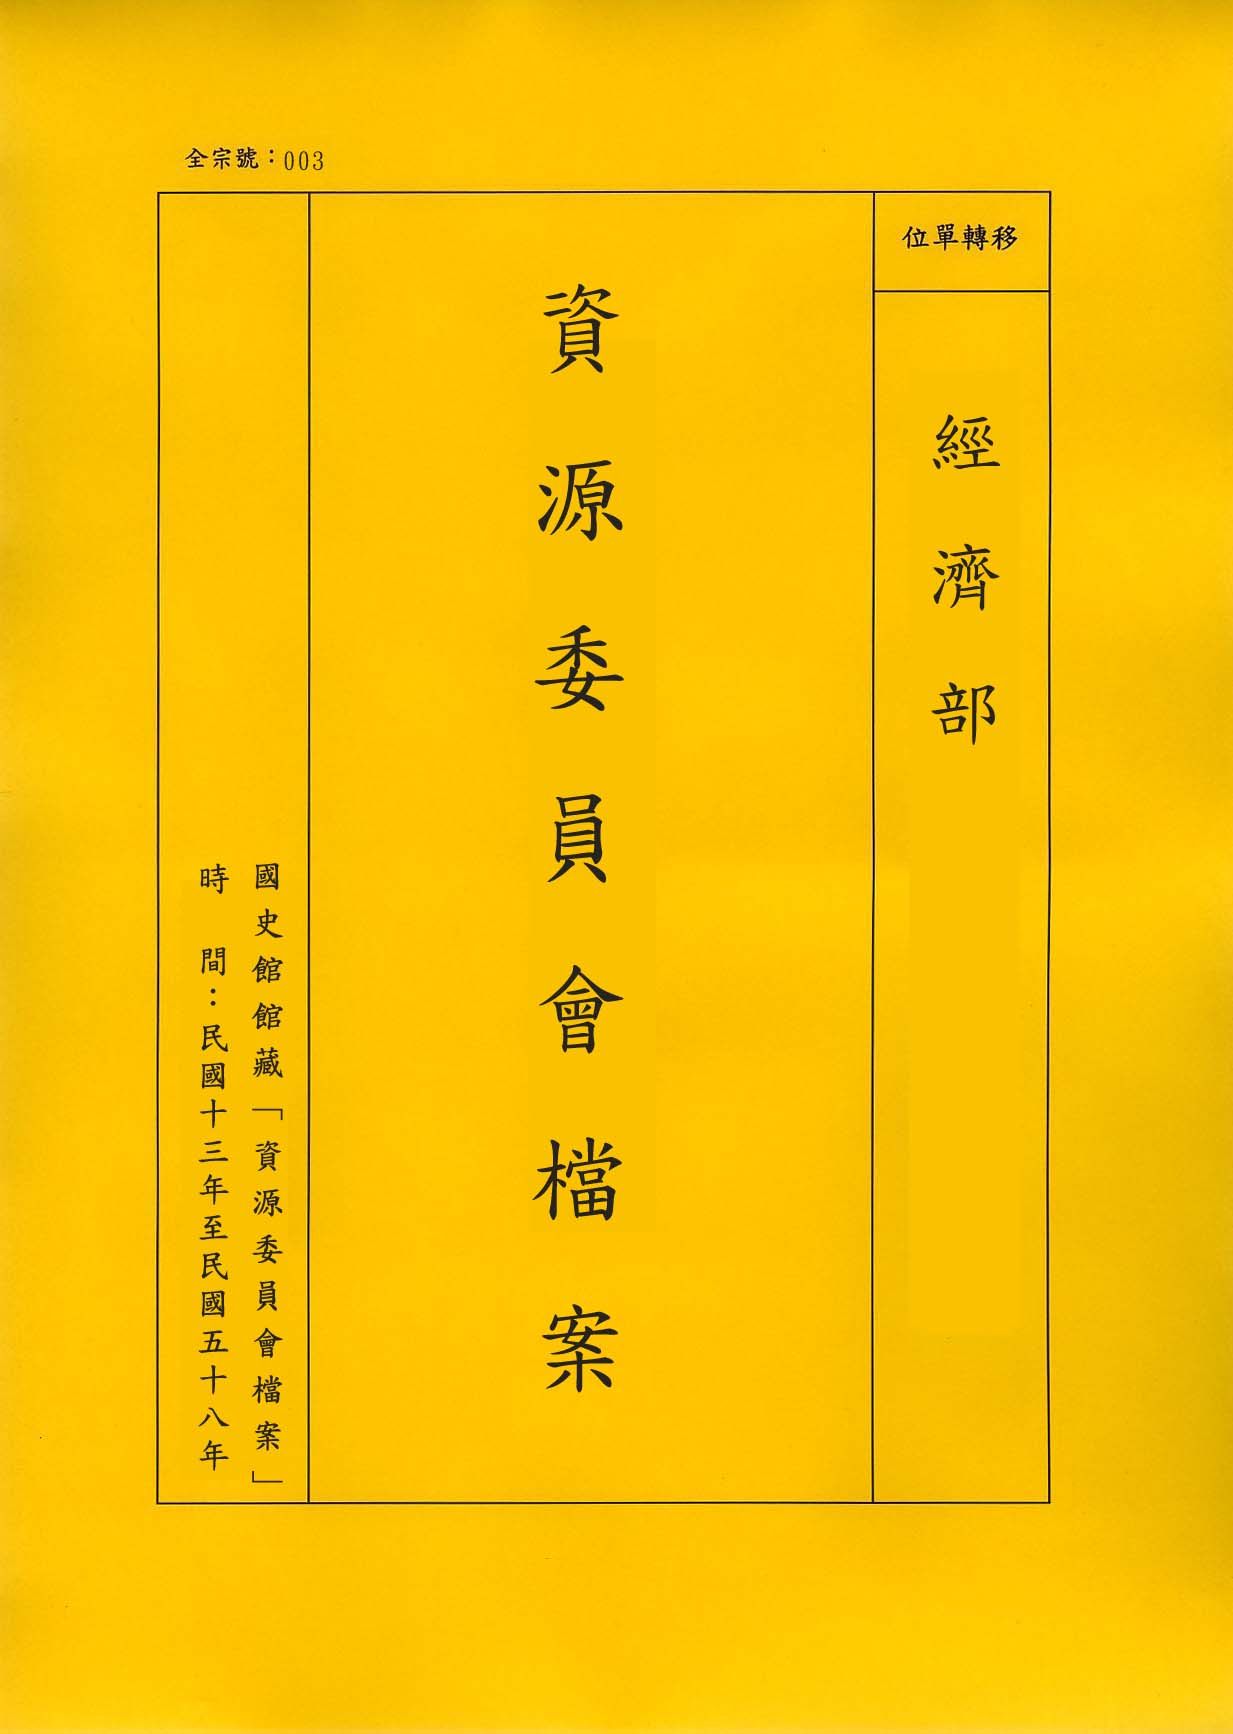 卷名:西京電廠財產損失報告單(003-010309-0260)